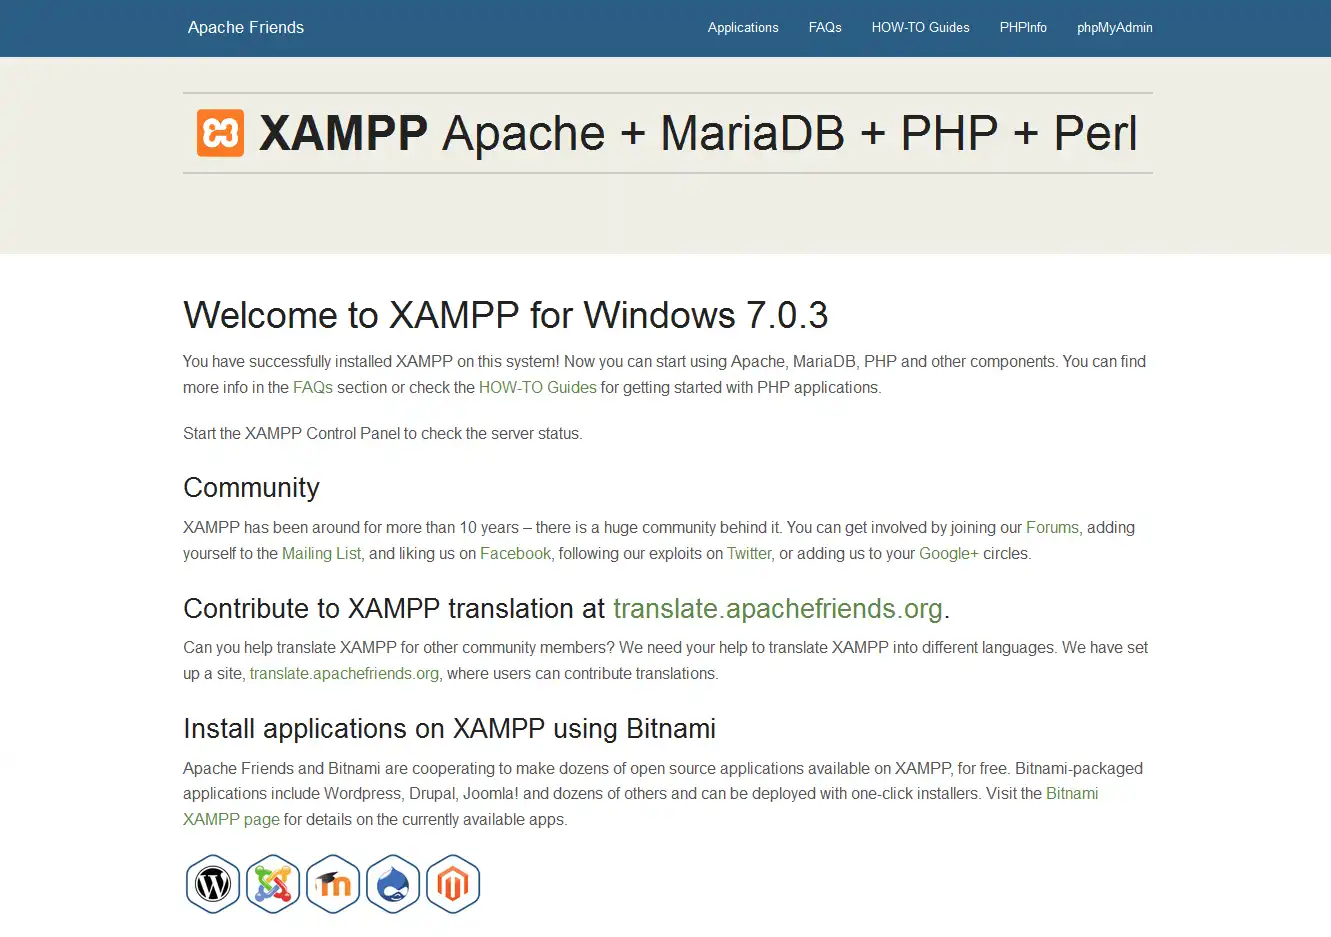 ابزار وب یا برنامه وب XAMPP را دانلود کنید